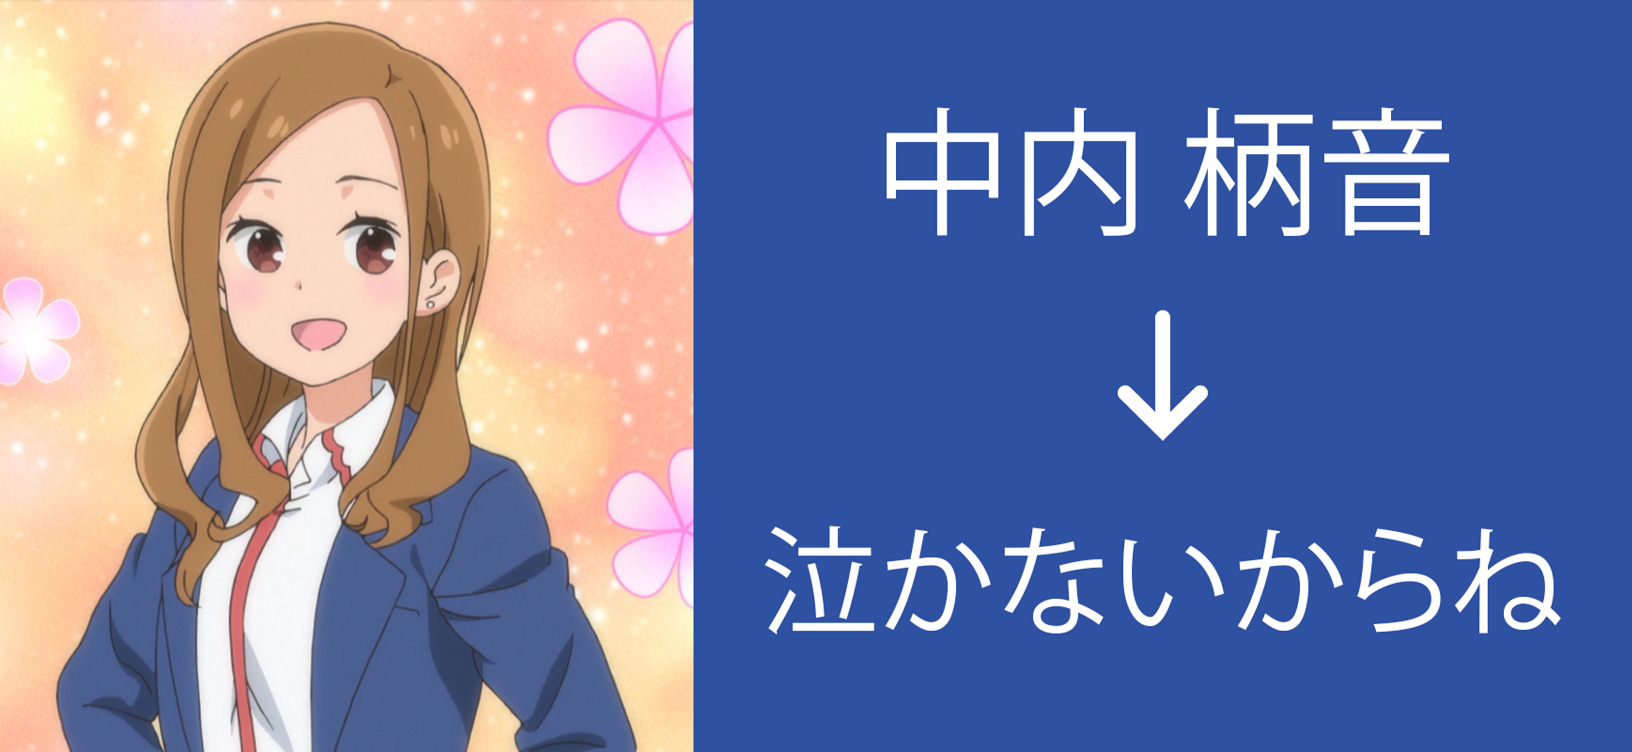 How to skip school., Name:Hitori Bocchi no Marumaru Seikastu#anime